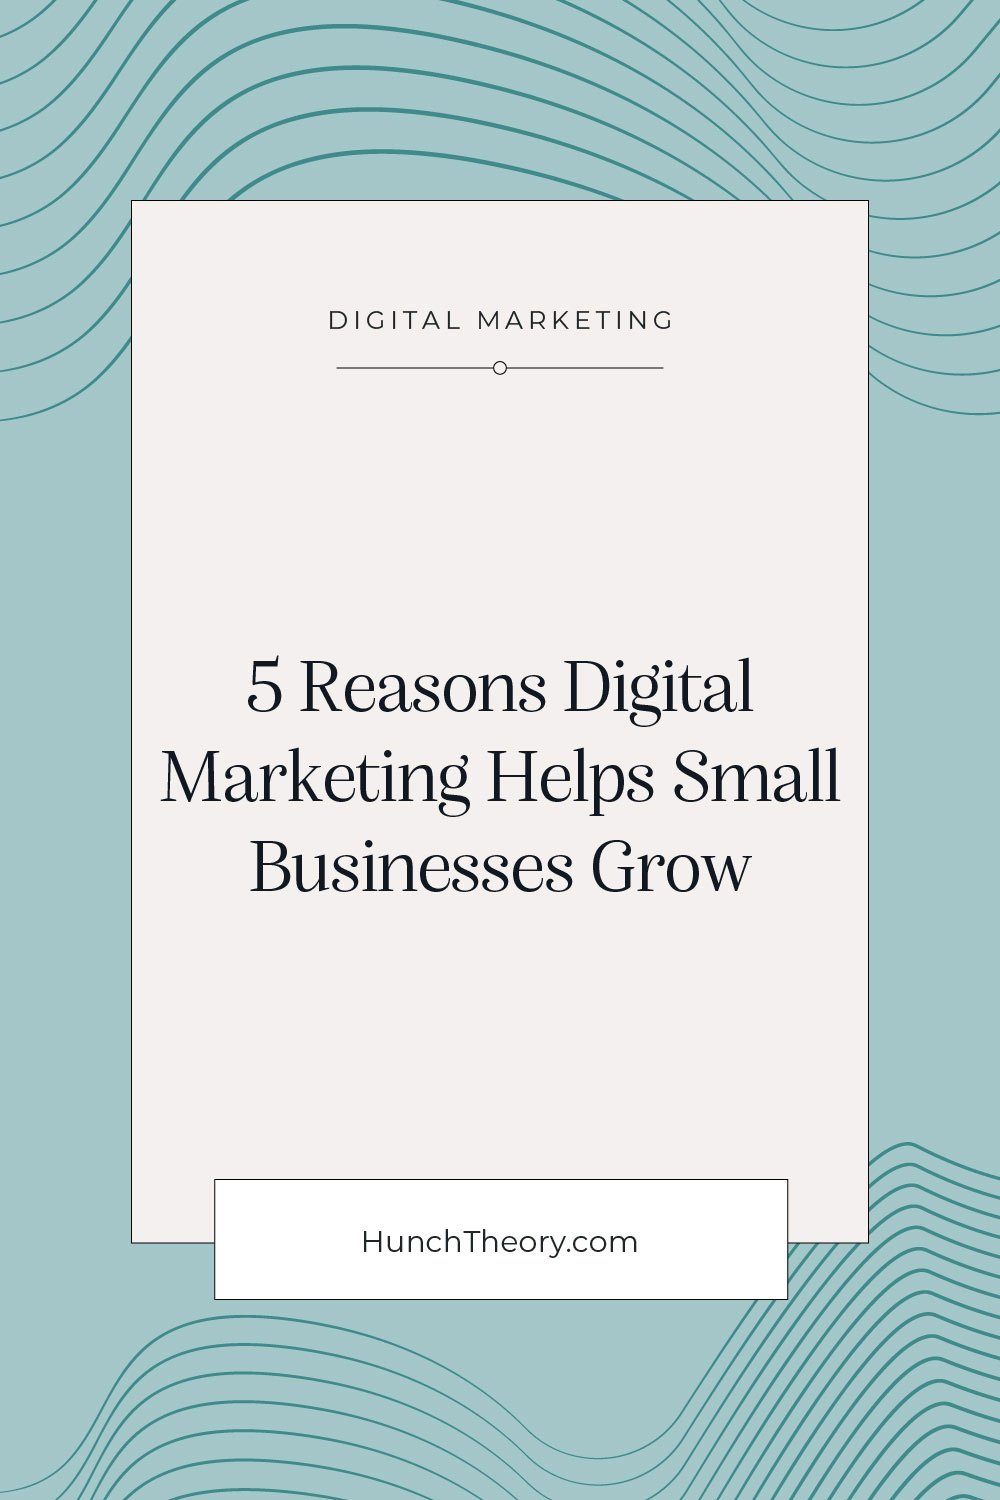 5 reasons how digital marketing helps